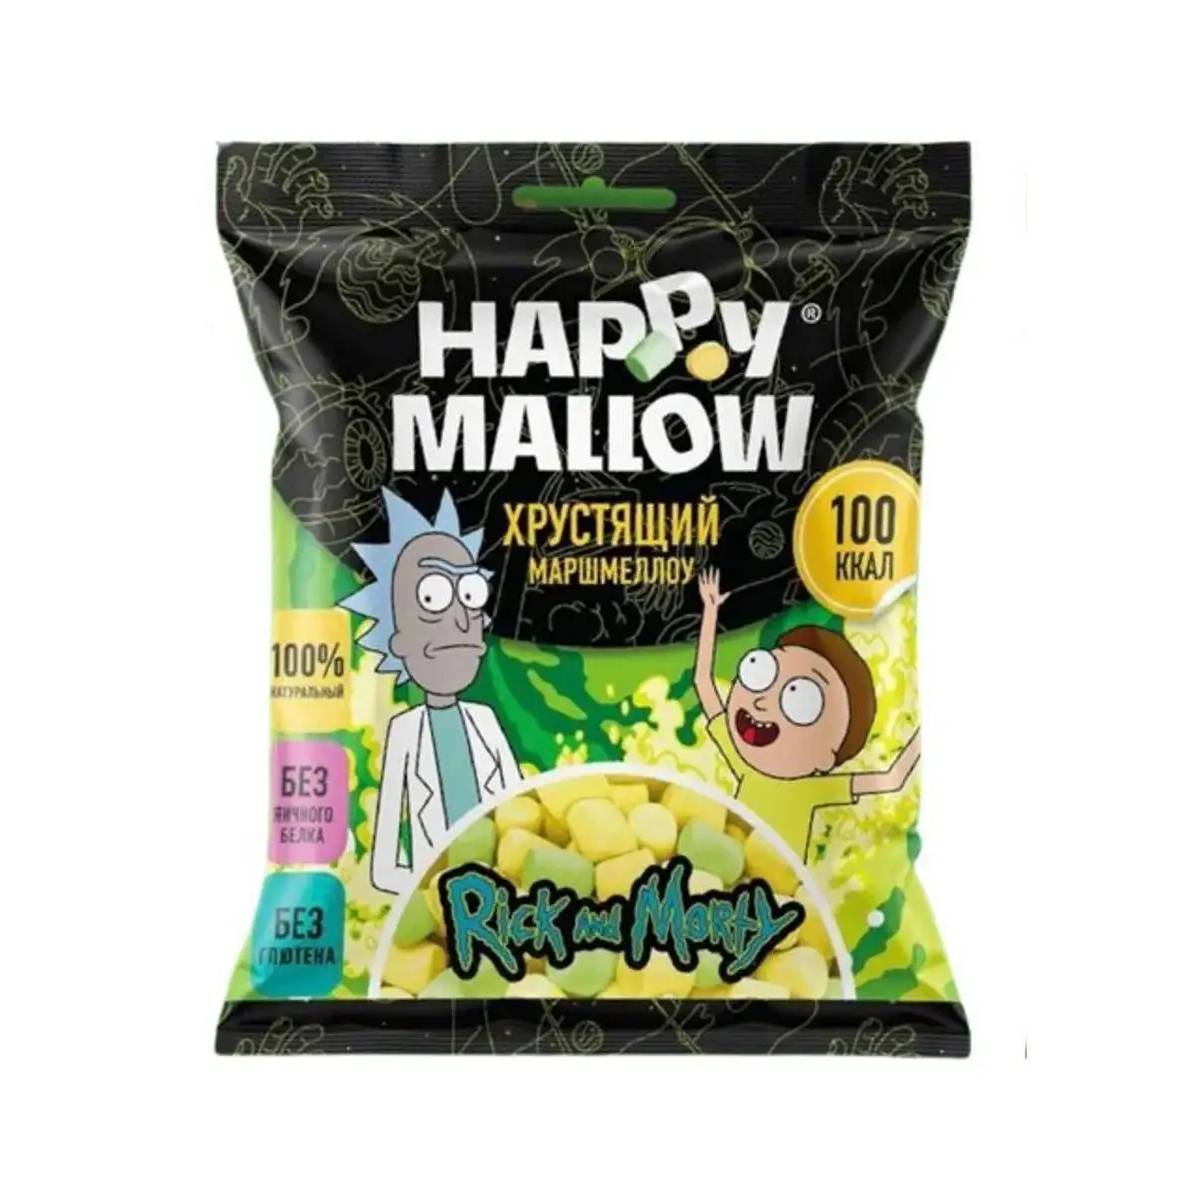 Маршмеллоу хрустящий Happy Mallow Rick And Morty, 30 г цена и фото